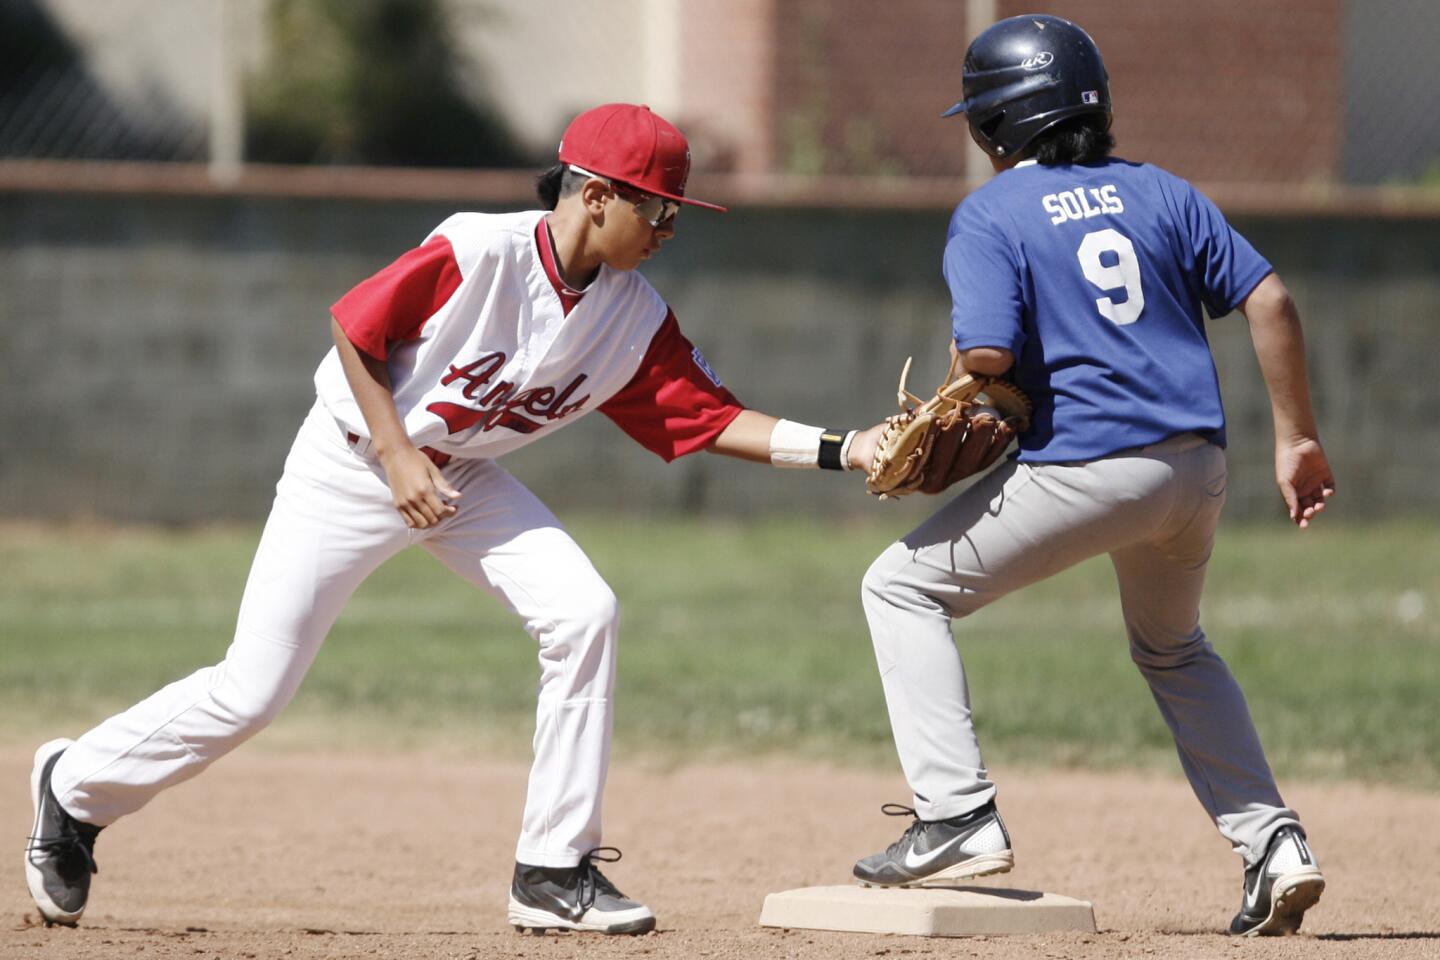 Burbank vs. Tujunga boy's baseball major league